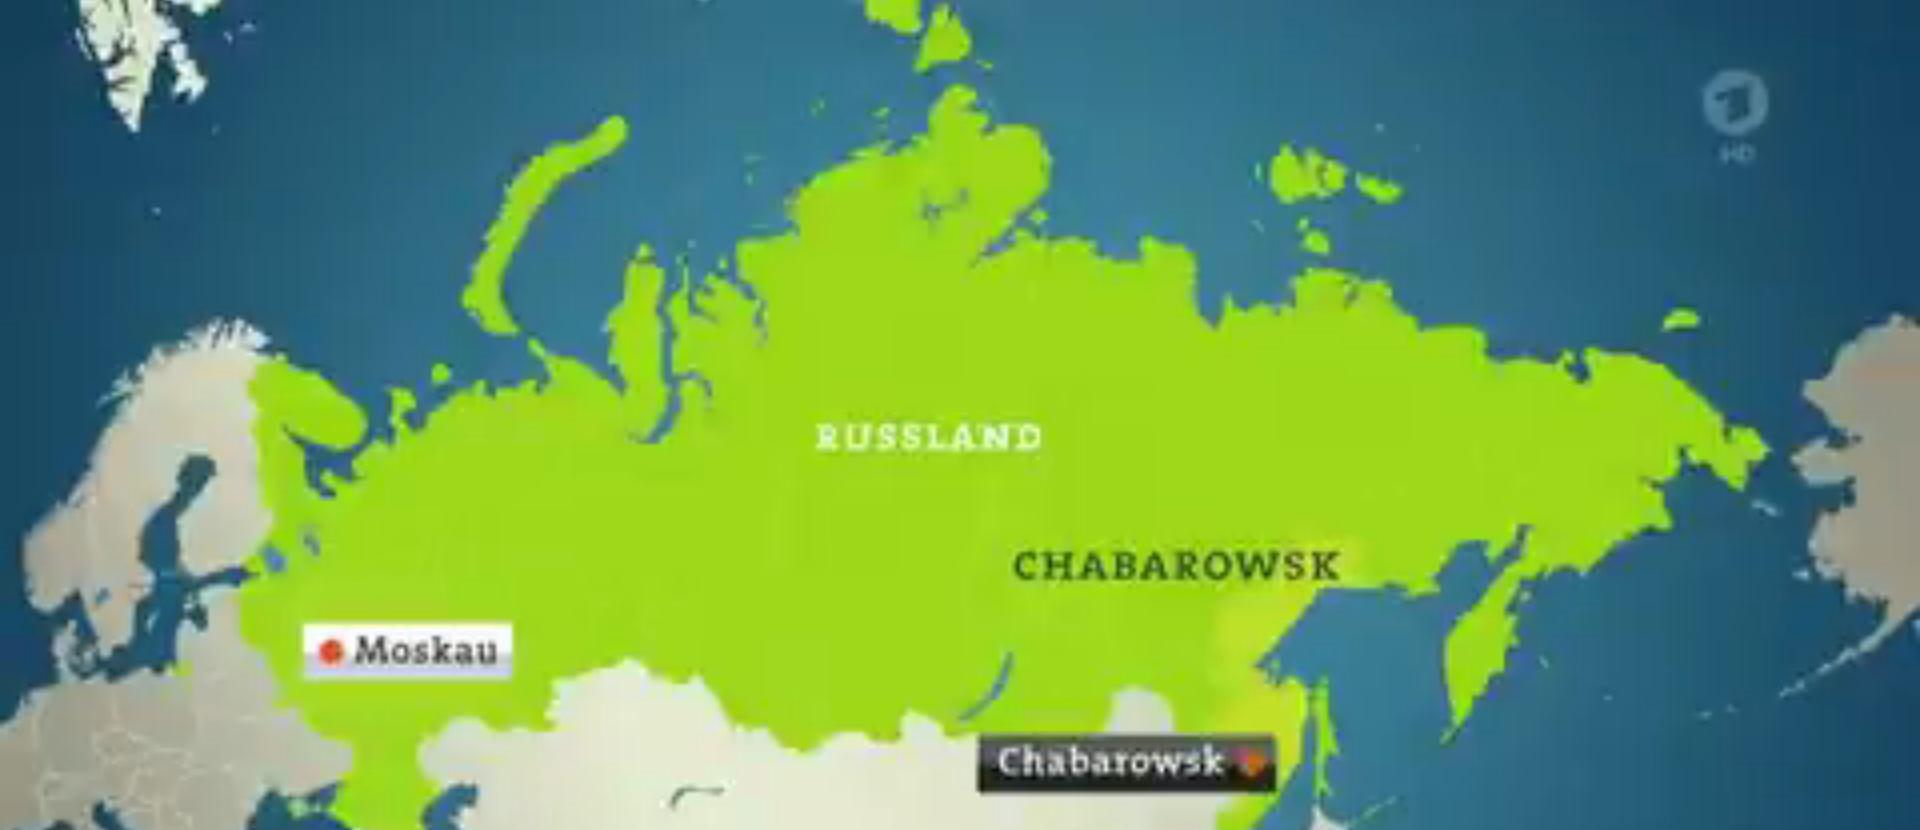 Немецкий телеканал показал протесты в Хабаровске вместе с картой Крыма в составе РФ